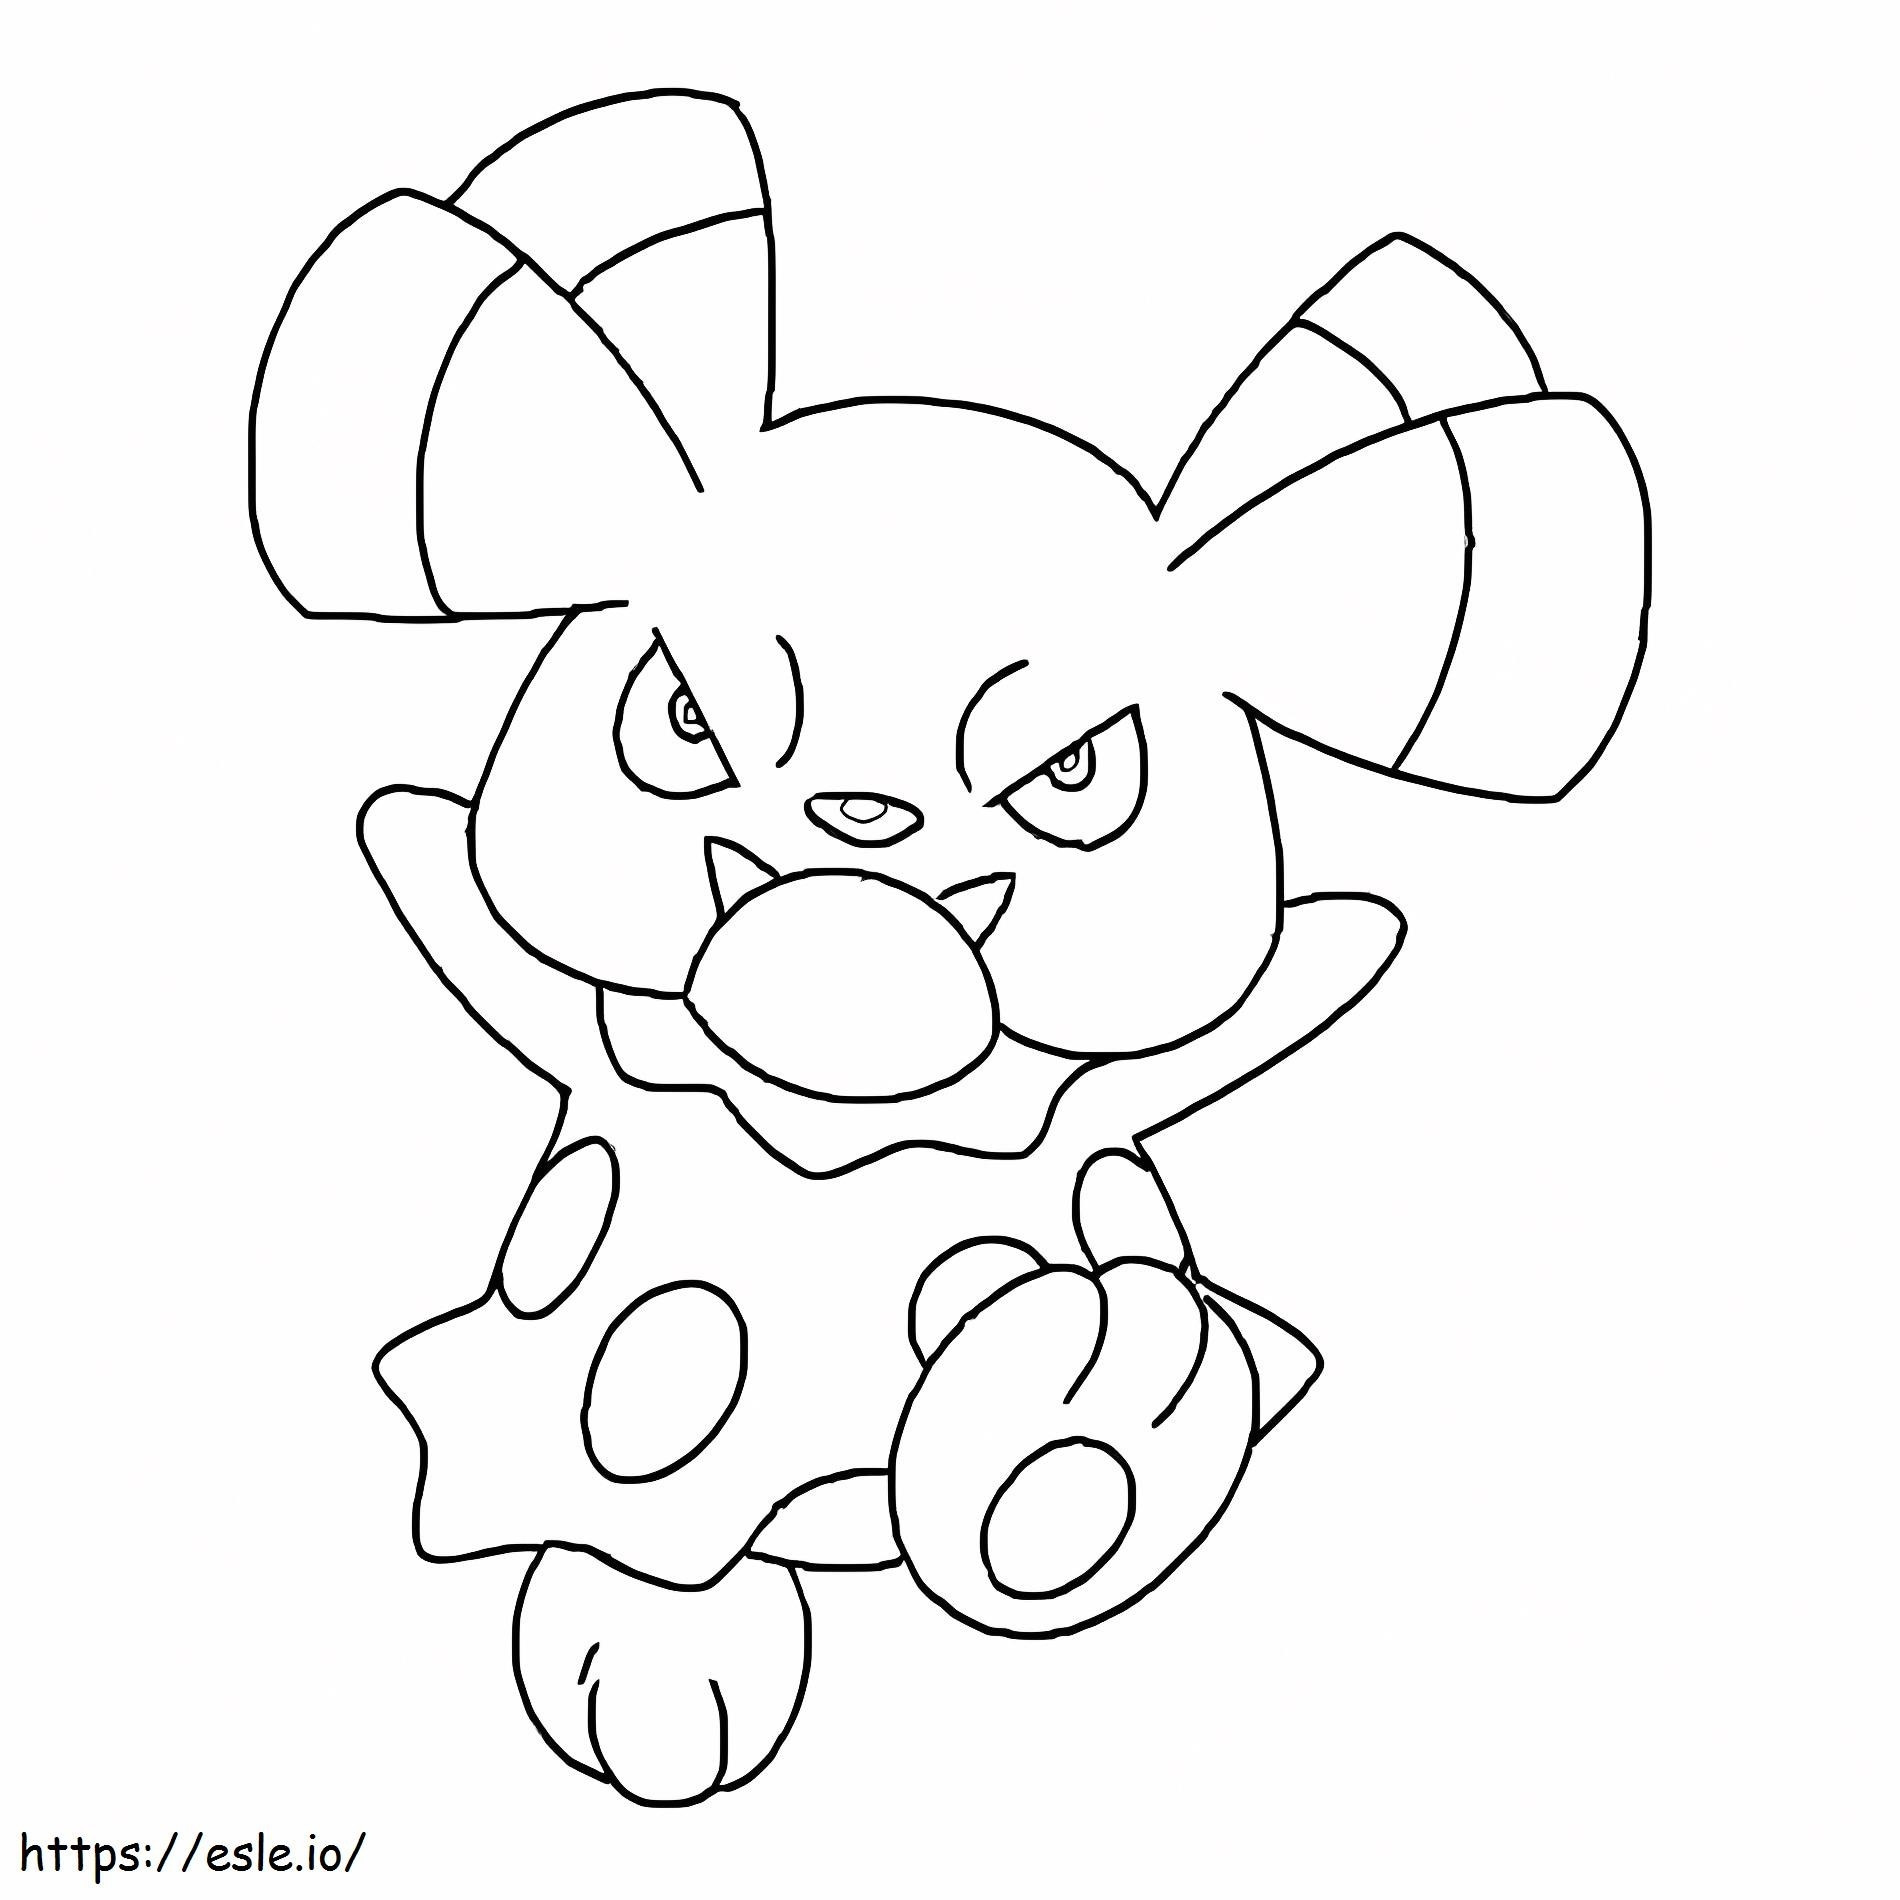 Coloriage Pokémon Snubbull Gen 2 à imprimer dessin